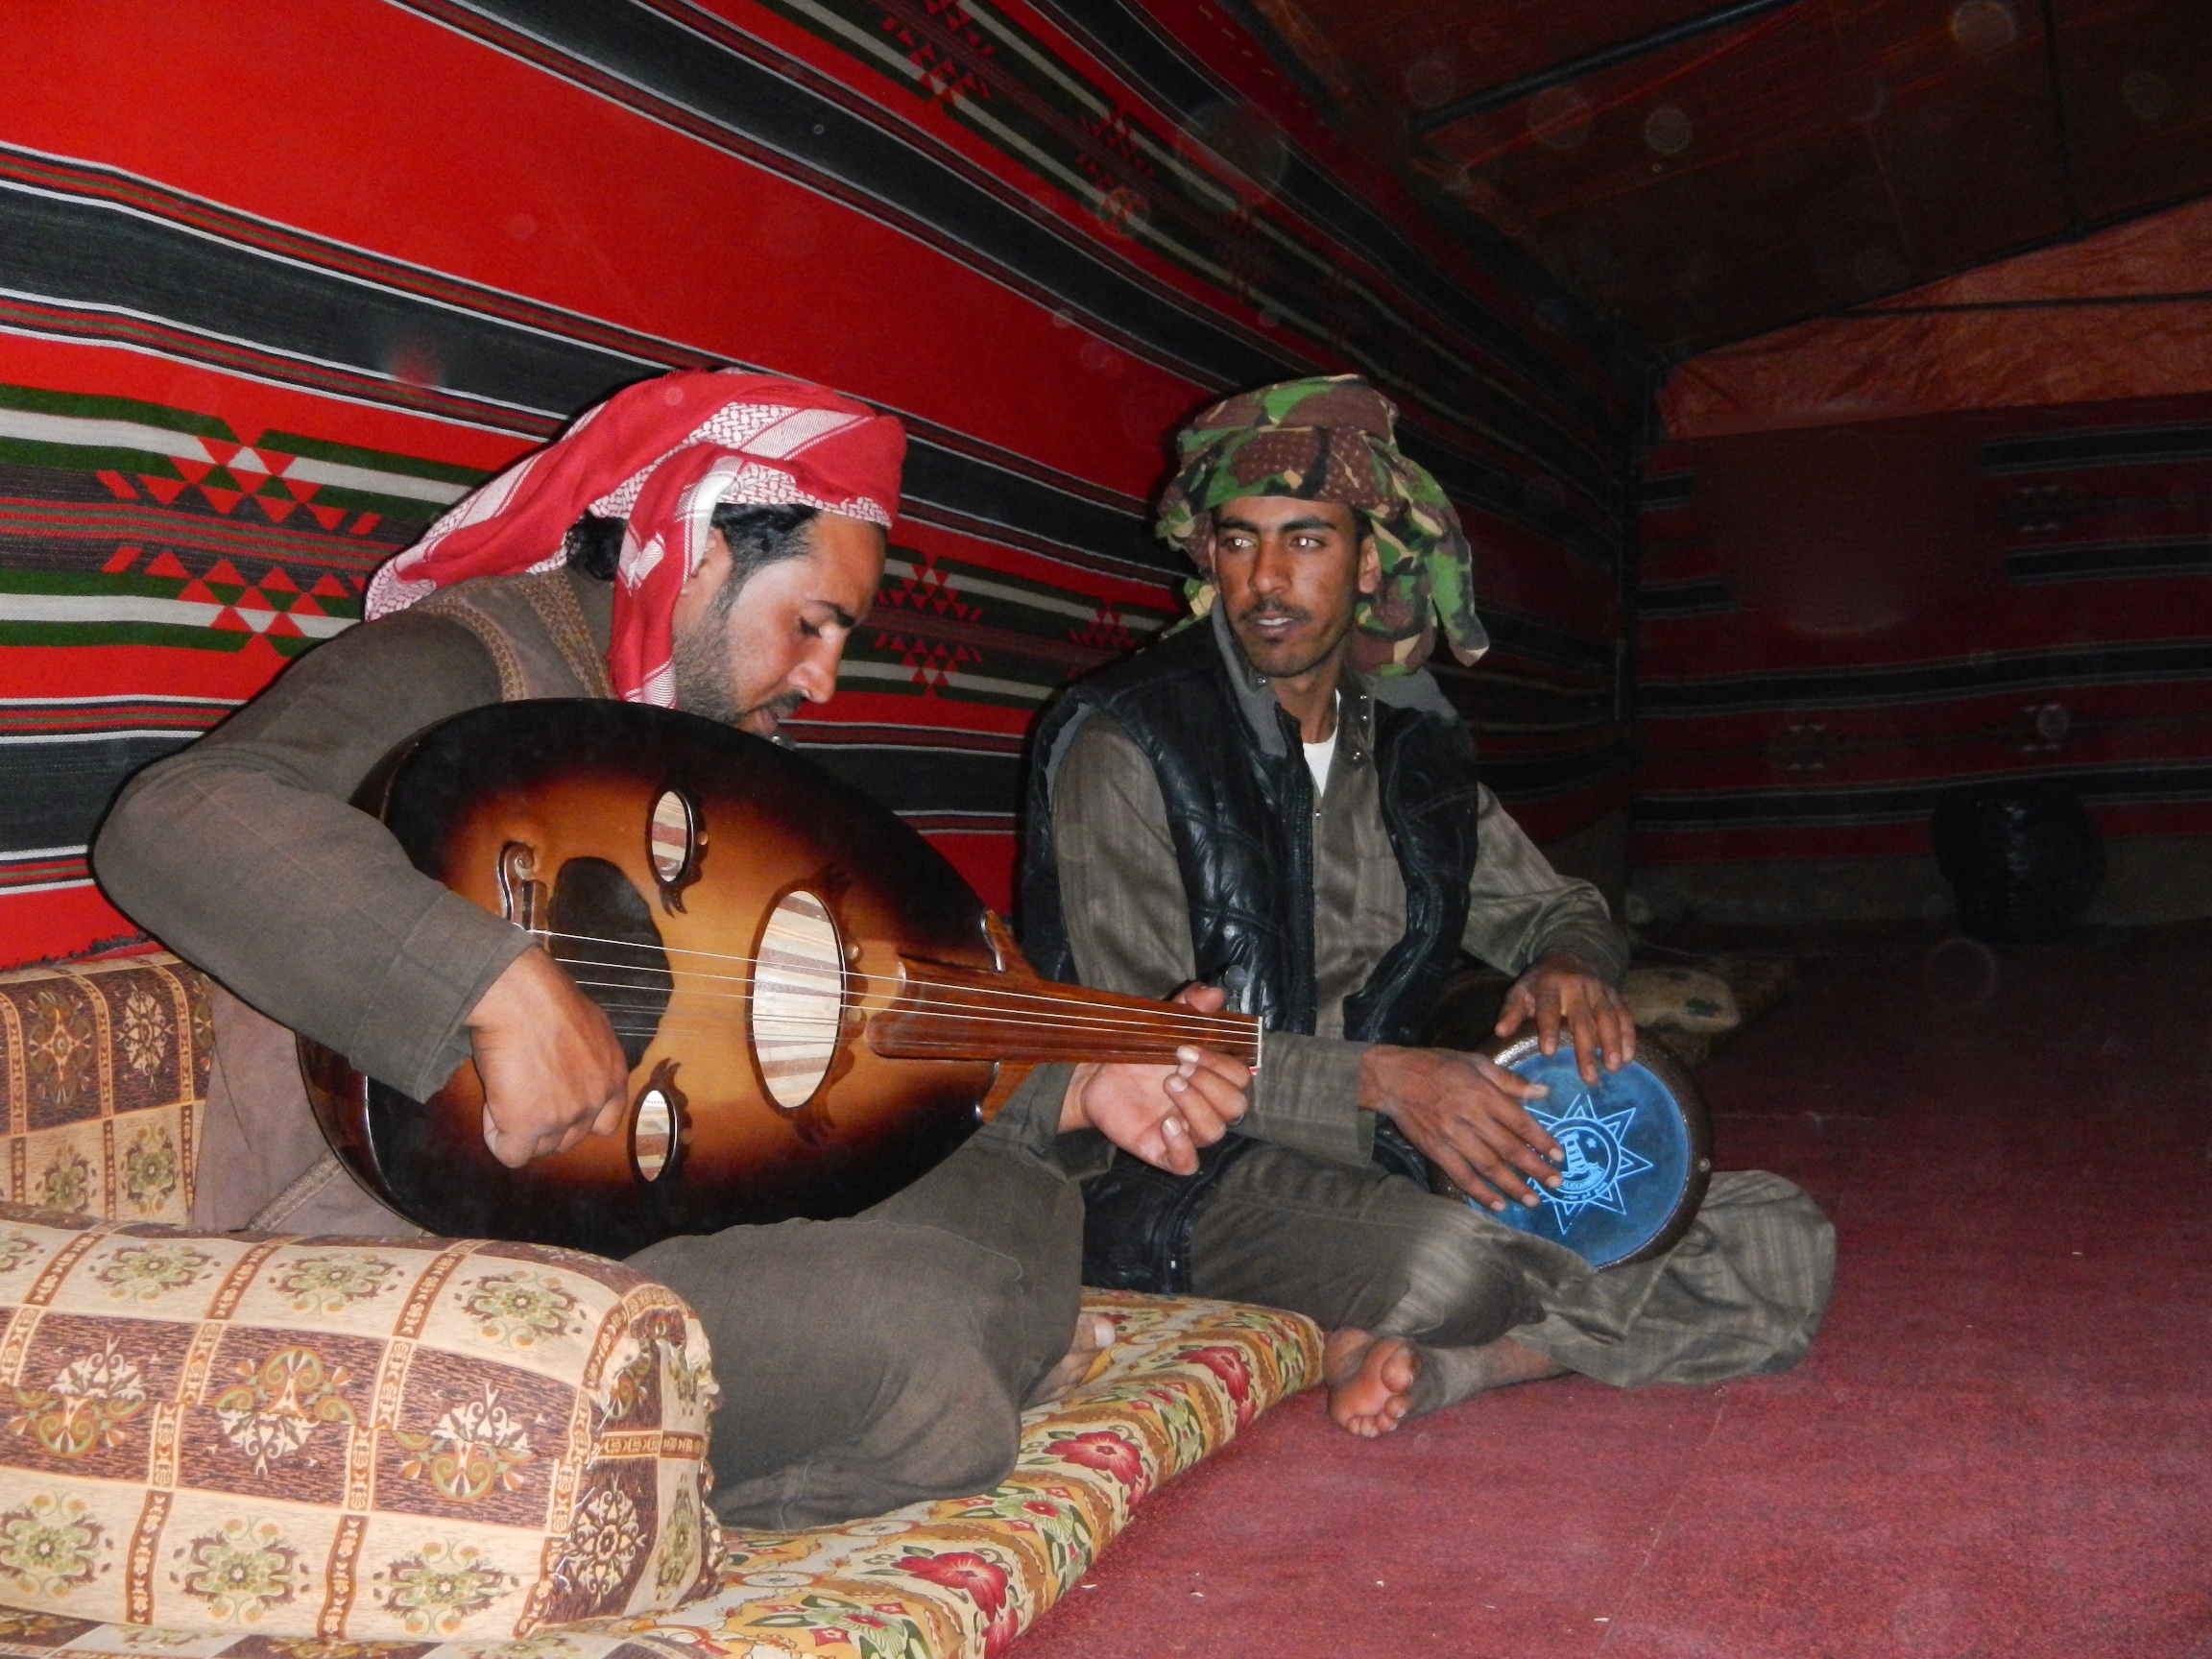  Bedouin music playing, Wadi Rum, 